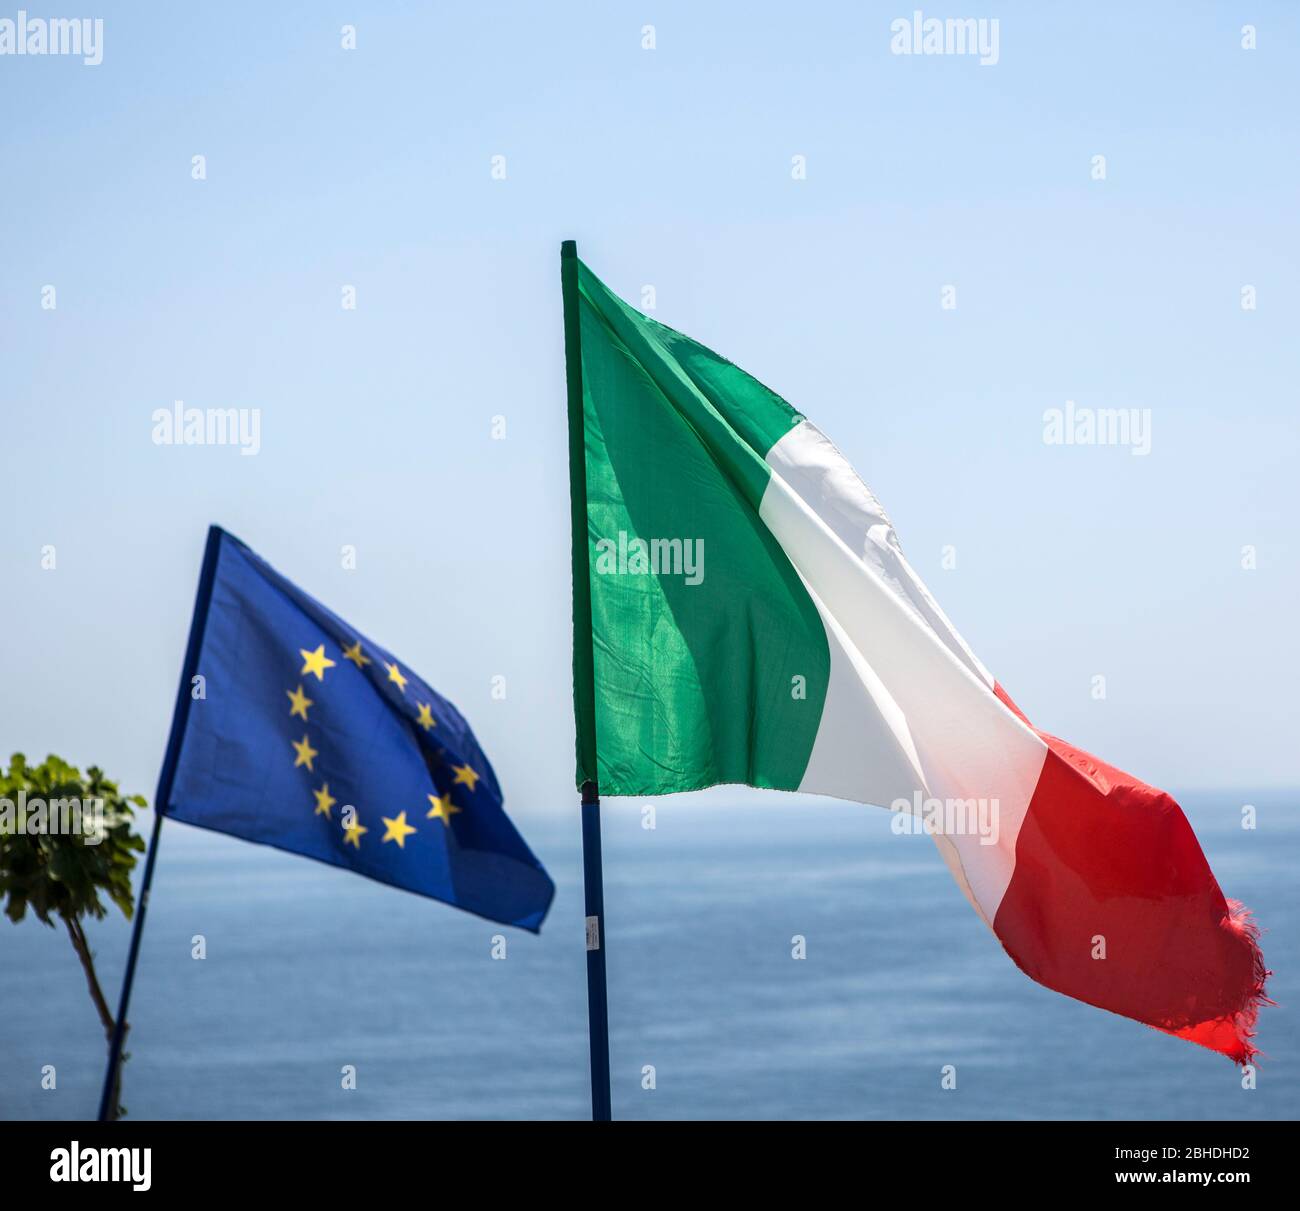 Die Flagge der europäischen Union weht neben der Flagge von Italien im Wind auf der Klippe von Santa Maria di Leuca, dem südöstlichten Punkt von Itali Foto Stock